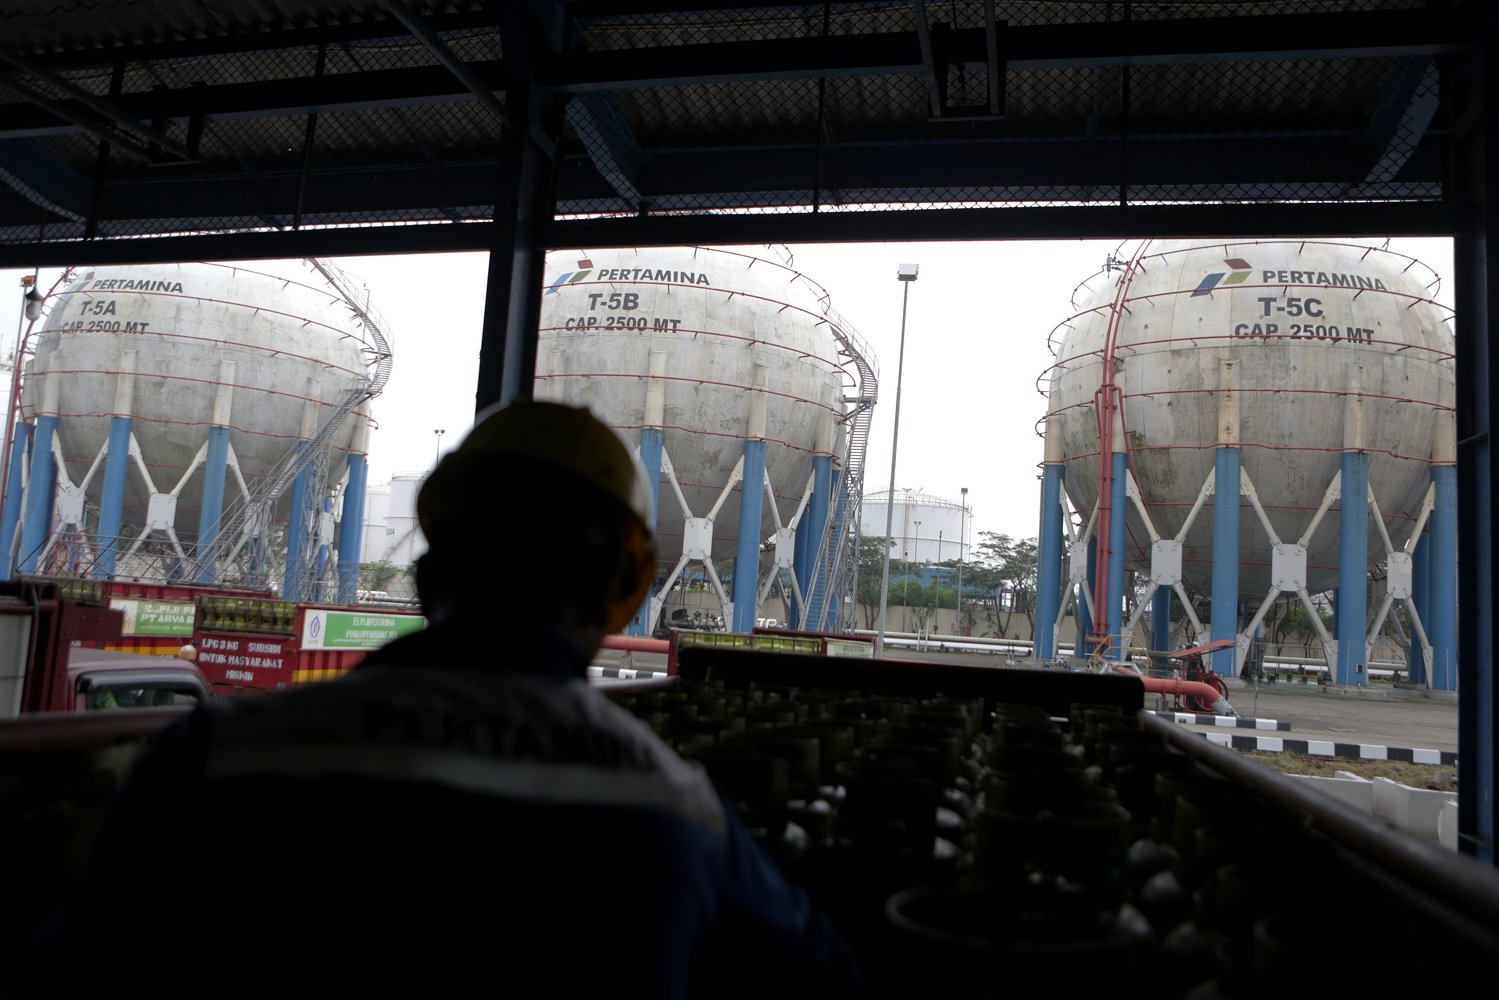 Depot LPG Pertamina Tanjung Priok melakukan dua cara penyaluran, yaitu sistem curah dengan Skid Tank disalurkan dari tangki bulat Sperikal dan produksi Stasiun Pengisian dan Pengangkutan Bulk Elpiji (SPPBE) LPG 3 kilogram bersubsidi.